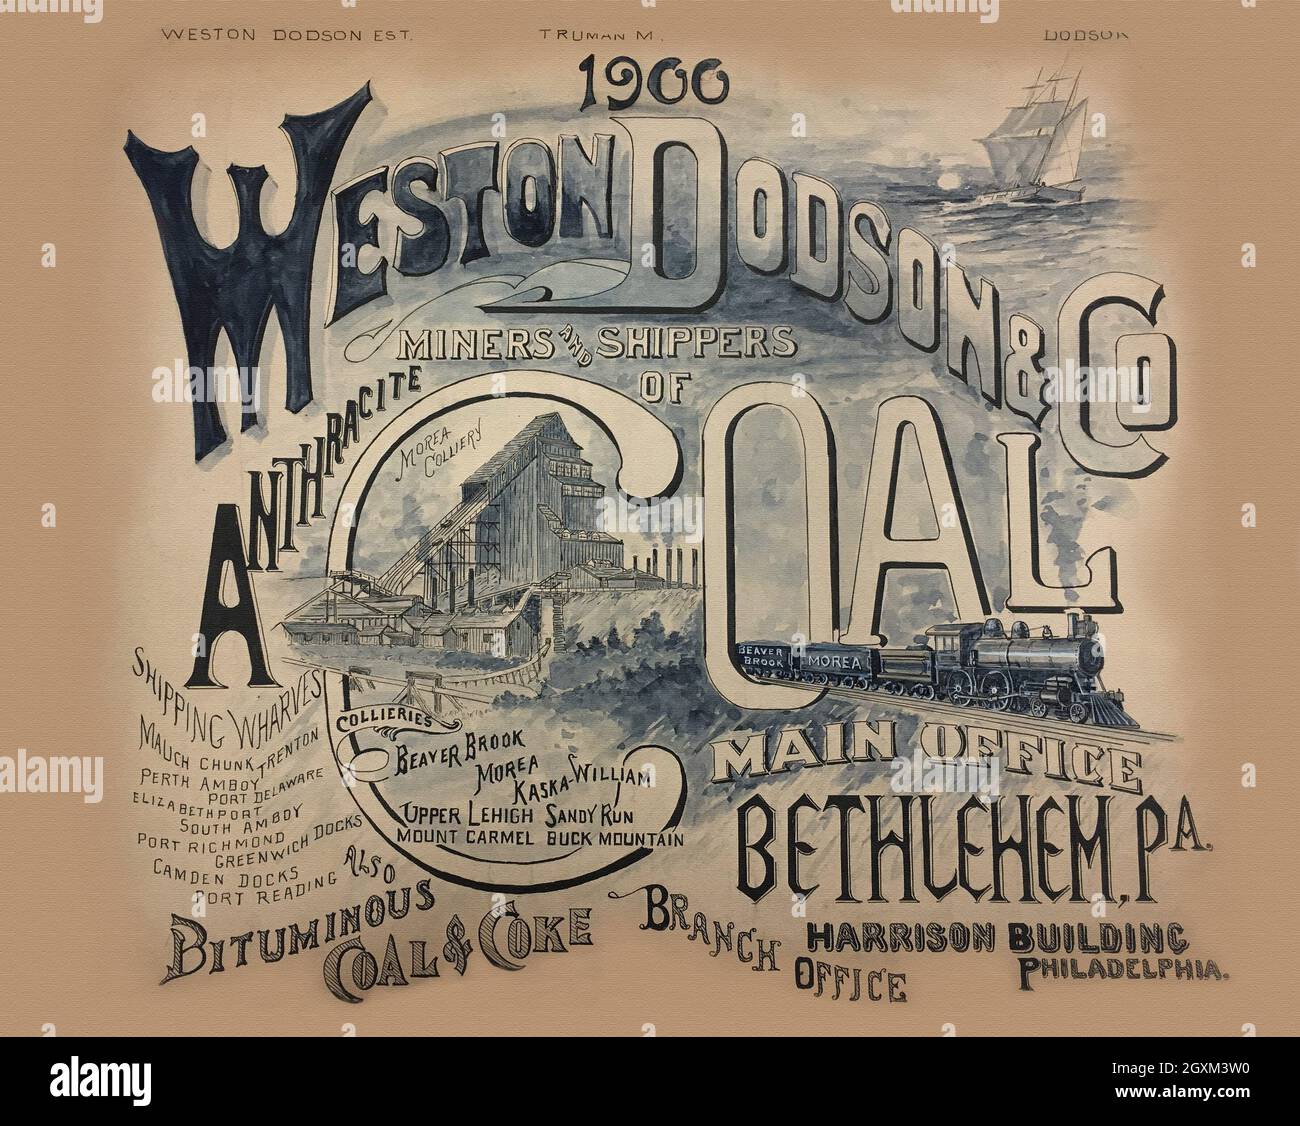 Bethlehem-based Weston Dodson Coal Company Stock Photo